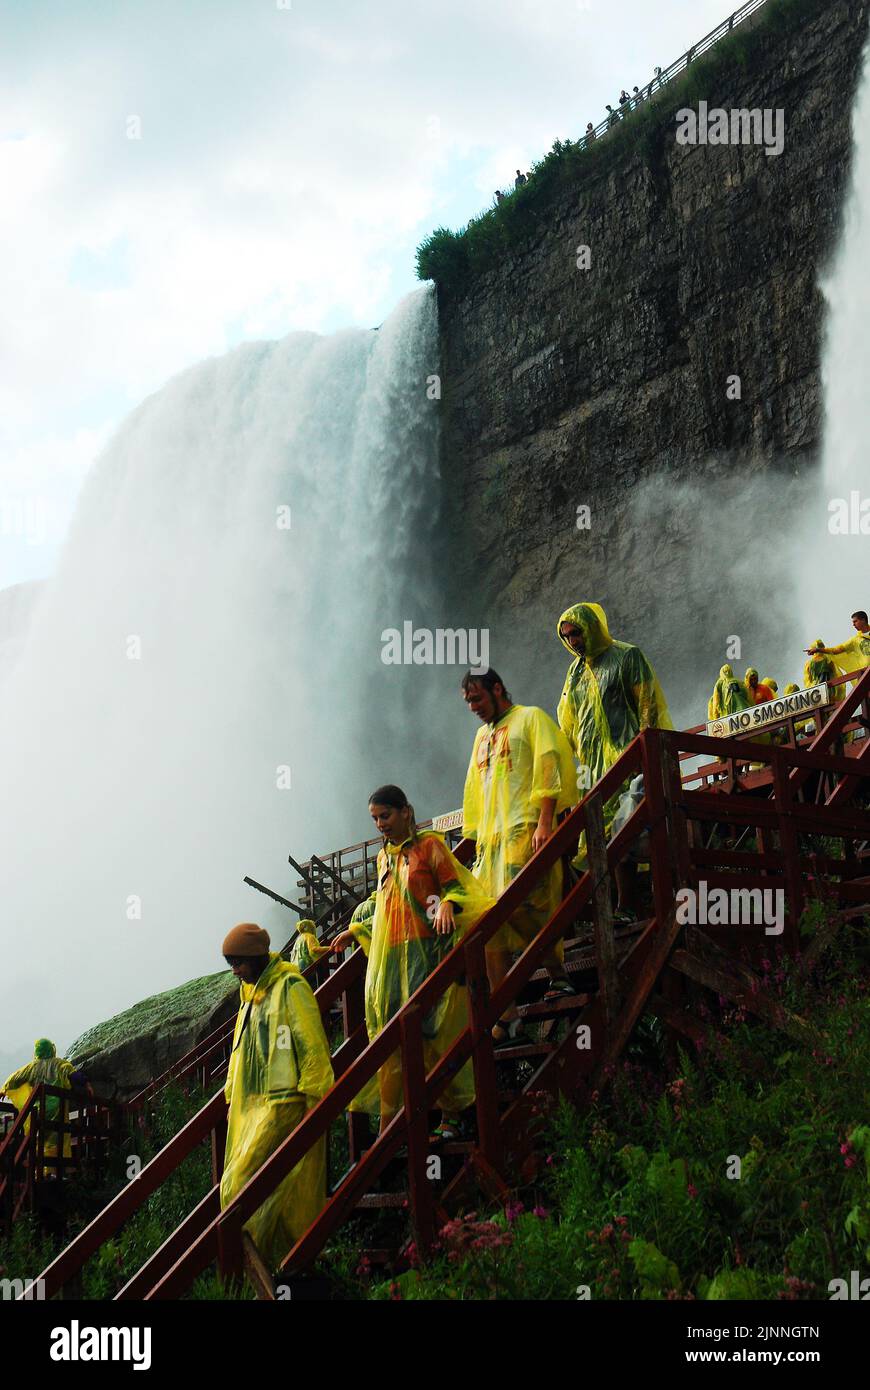 Les personnes portant des manteaux de pluie poncho jaunes descendent les escaliers de la visite Cave of the Winds qui amène les visiteurs à la base des chutes américaines du Niagara Banque D'Images